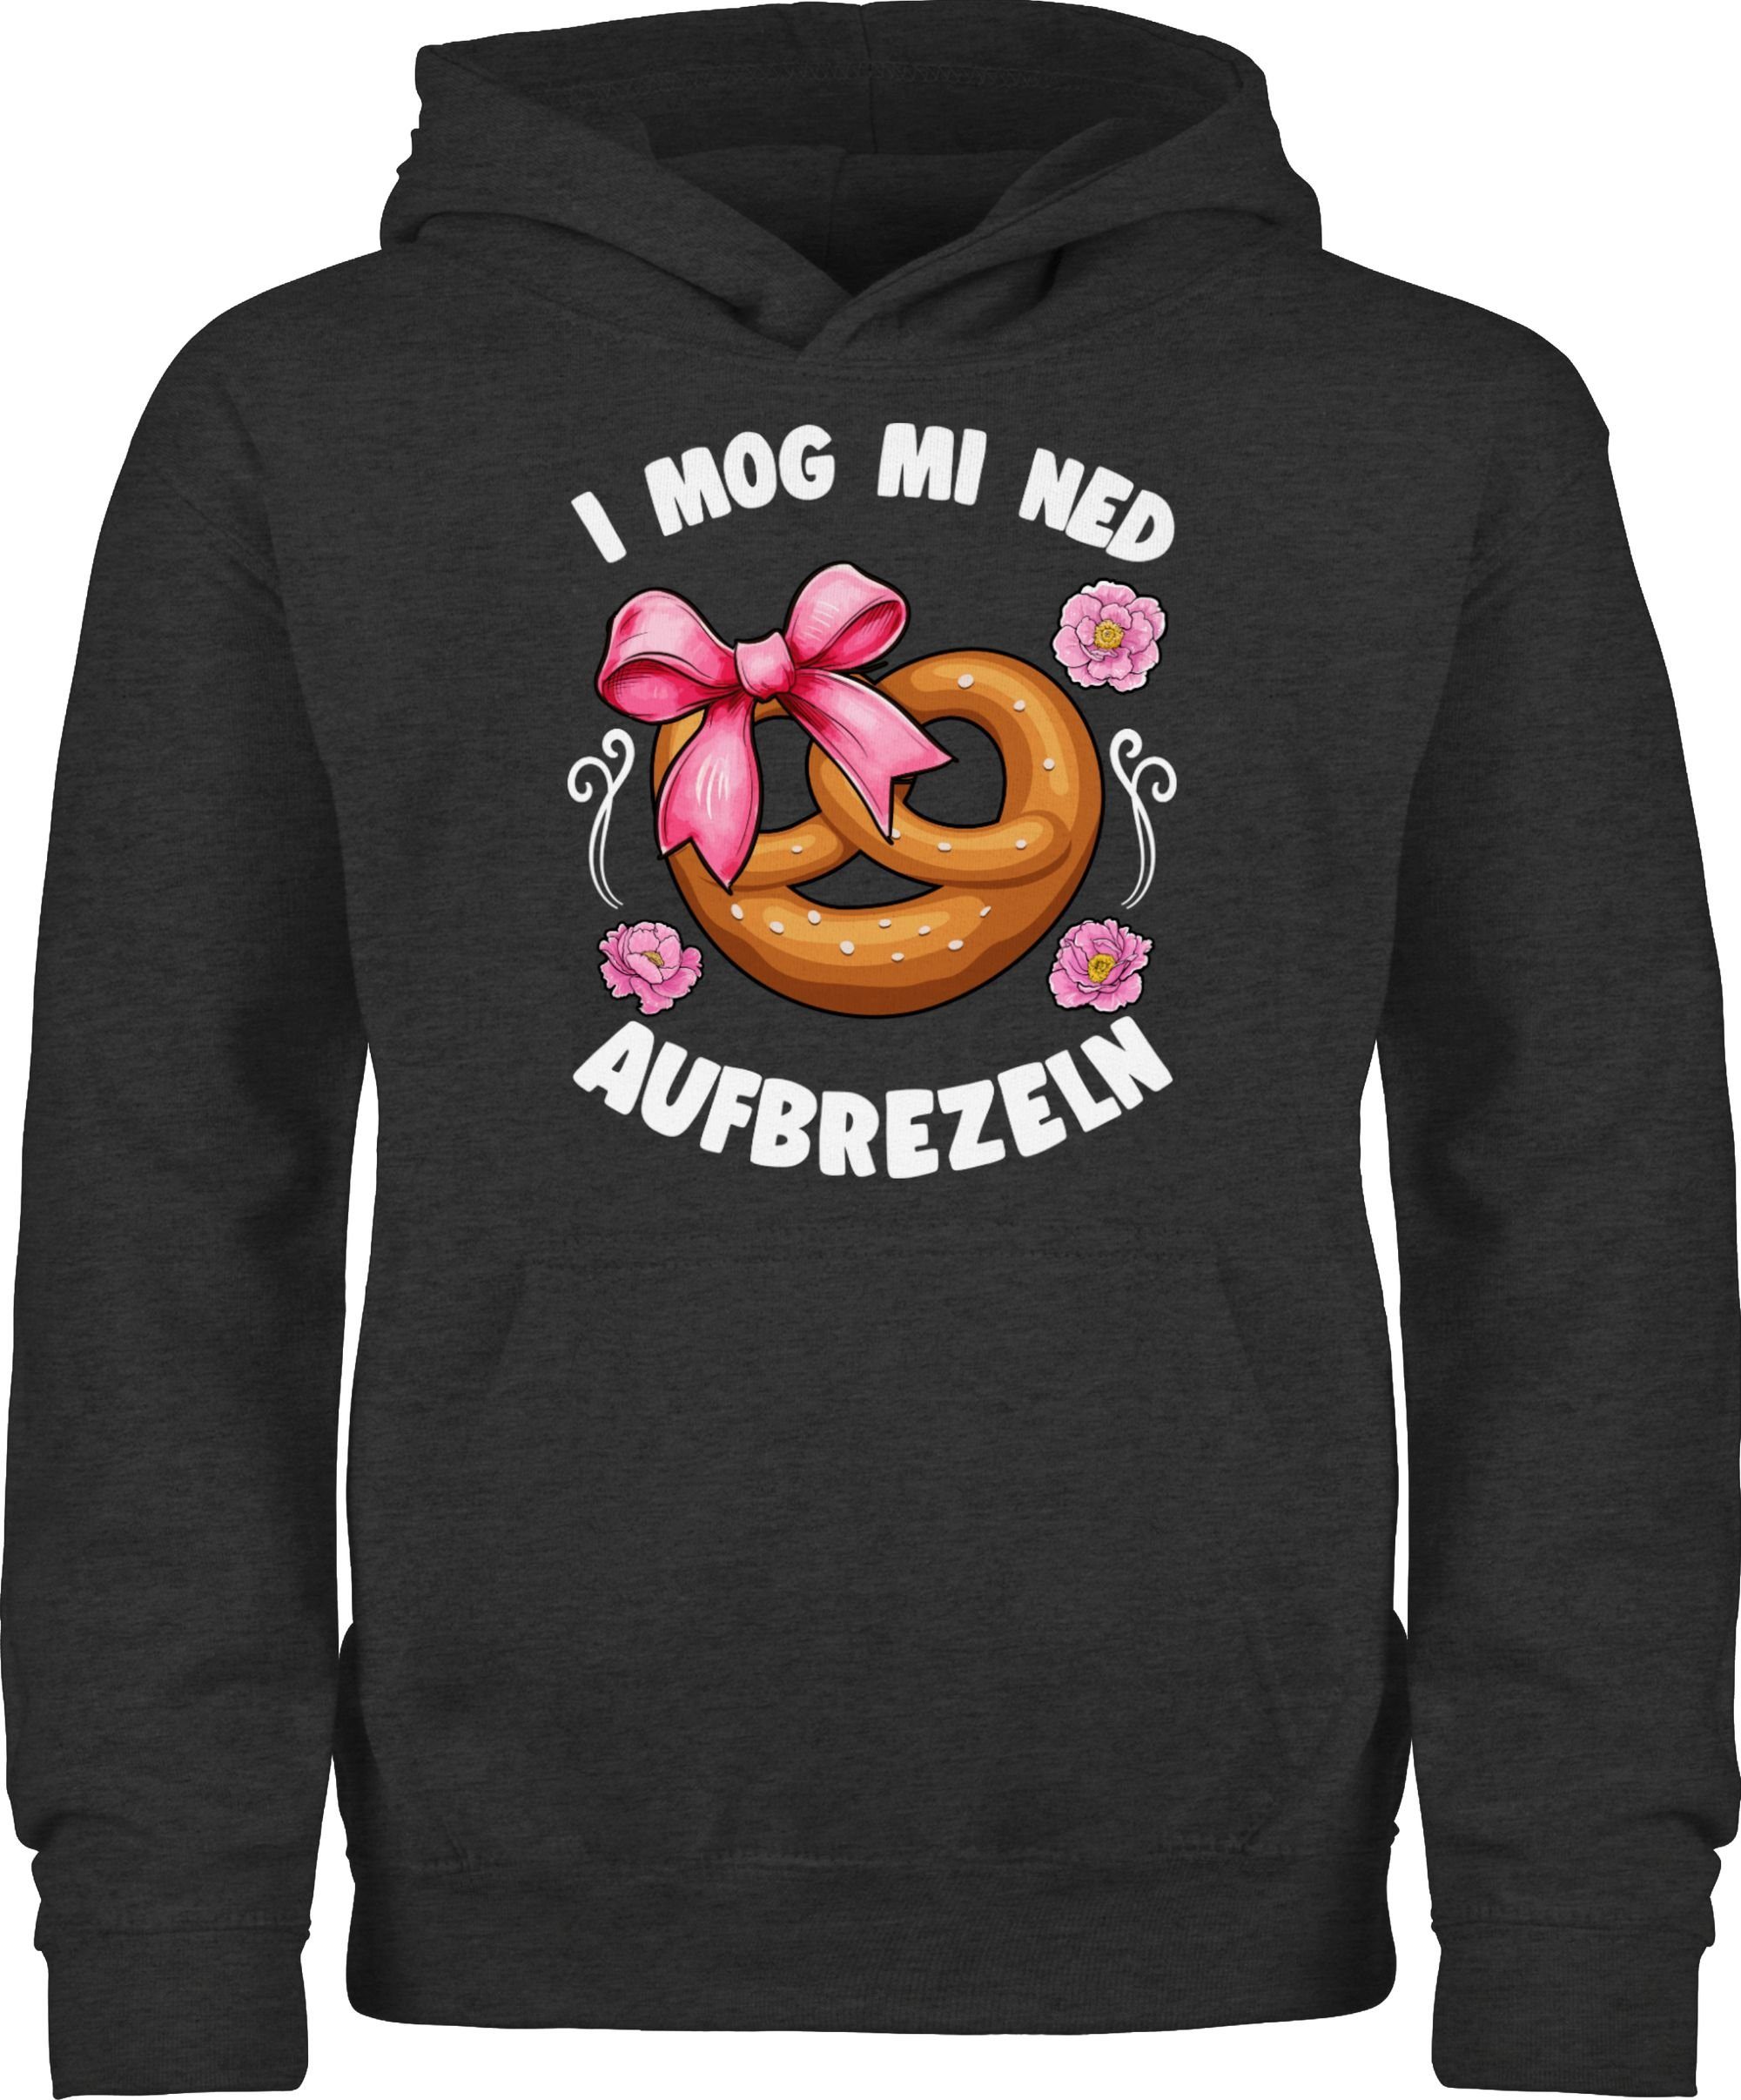 Shirtracer Hoodie I mog mi ned aufbrezeln Mode für Oktoberfest Kinder Outfit 2 Anthrazit meliert | Sweatshirts